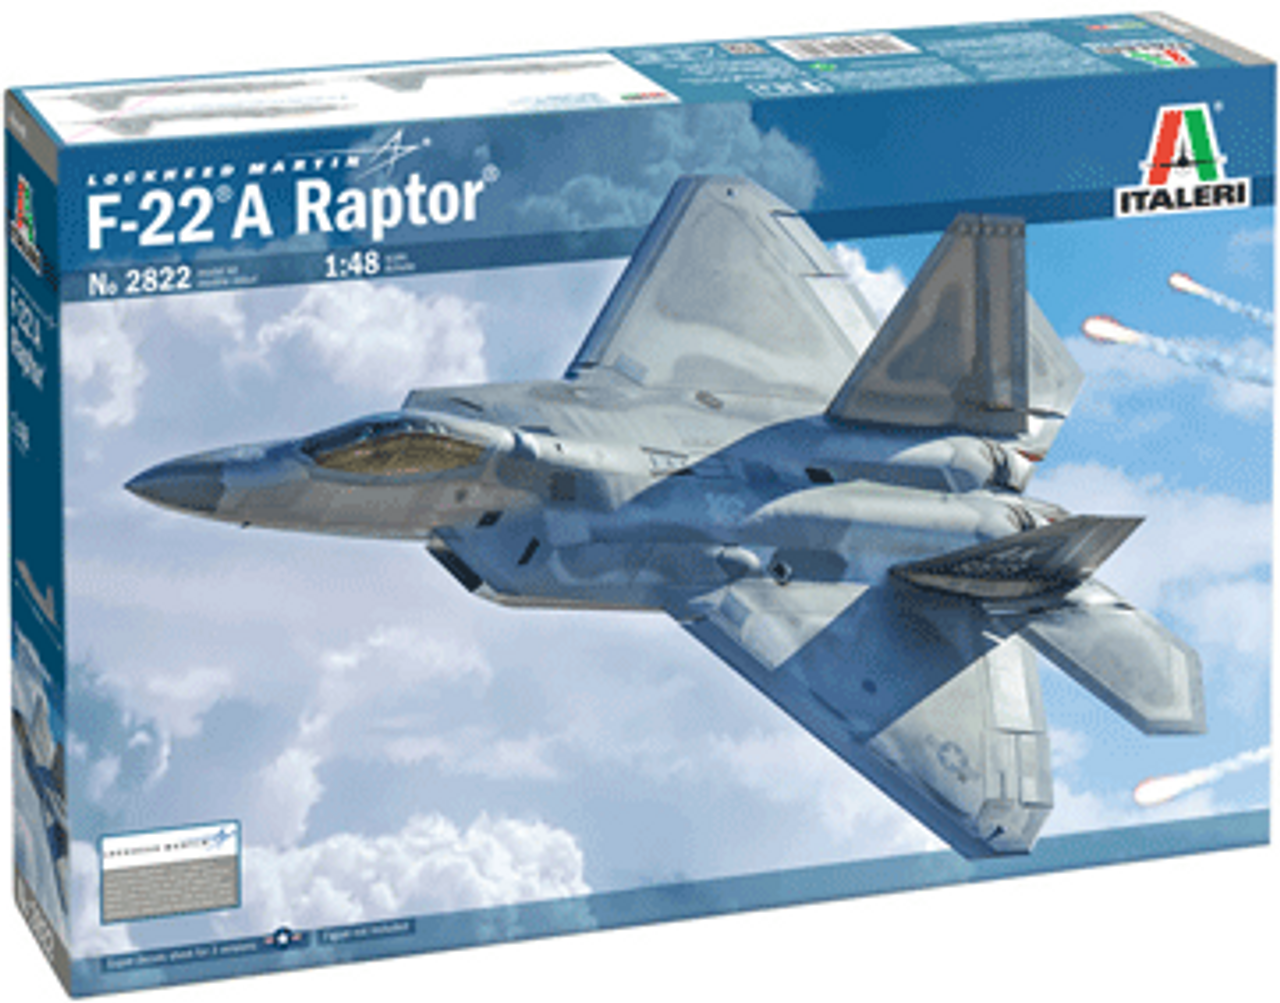 Italeri 2822 1/48 F-22A Raptor Plastic Model Kit